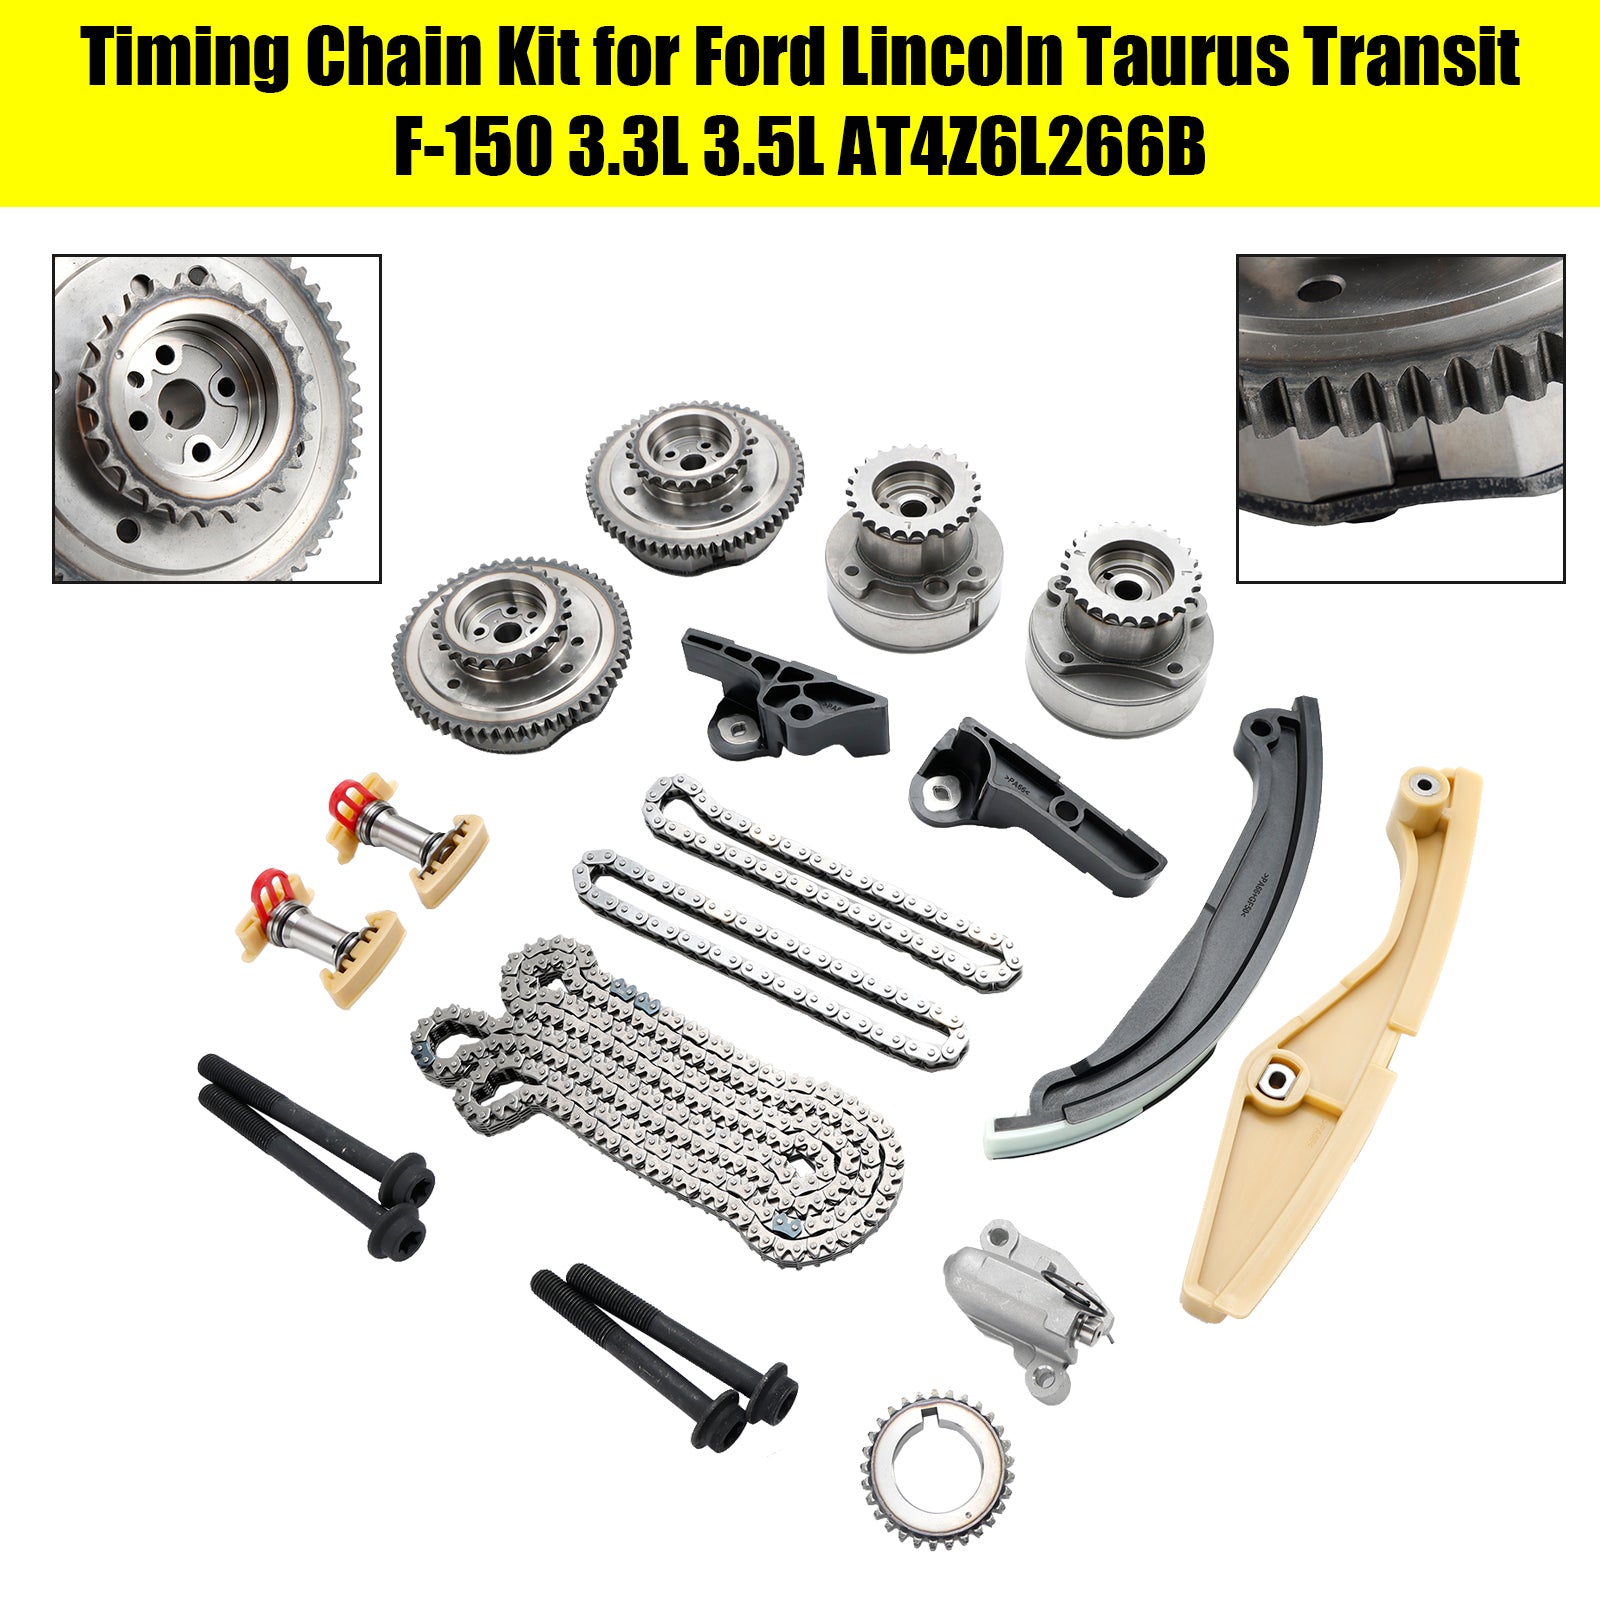 Timing Chain Kit pour Ford Lincoln Taurus Transit F-150 3.3L 3.5L AT4Z6L266B